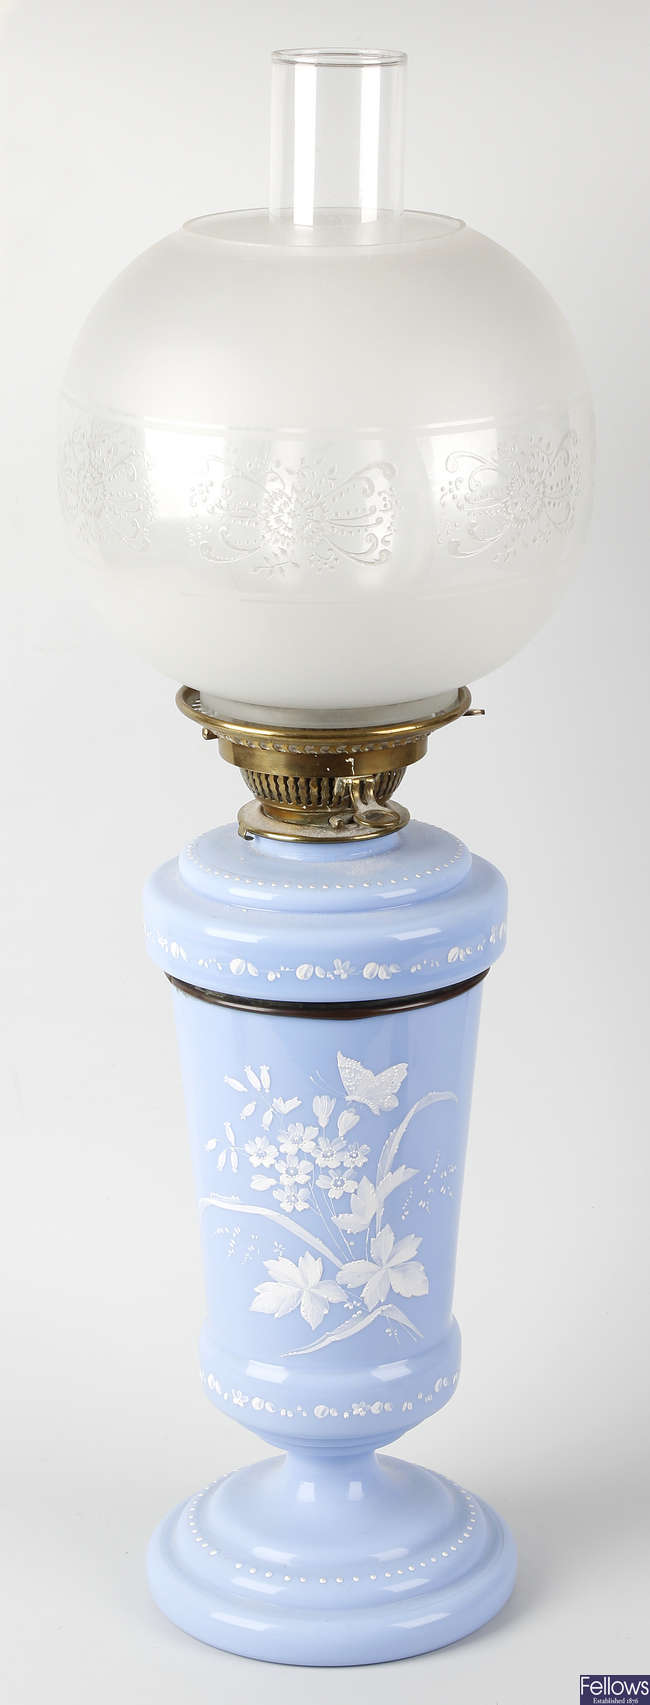 An opaque blue glass paraffin lamp.